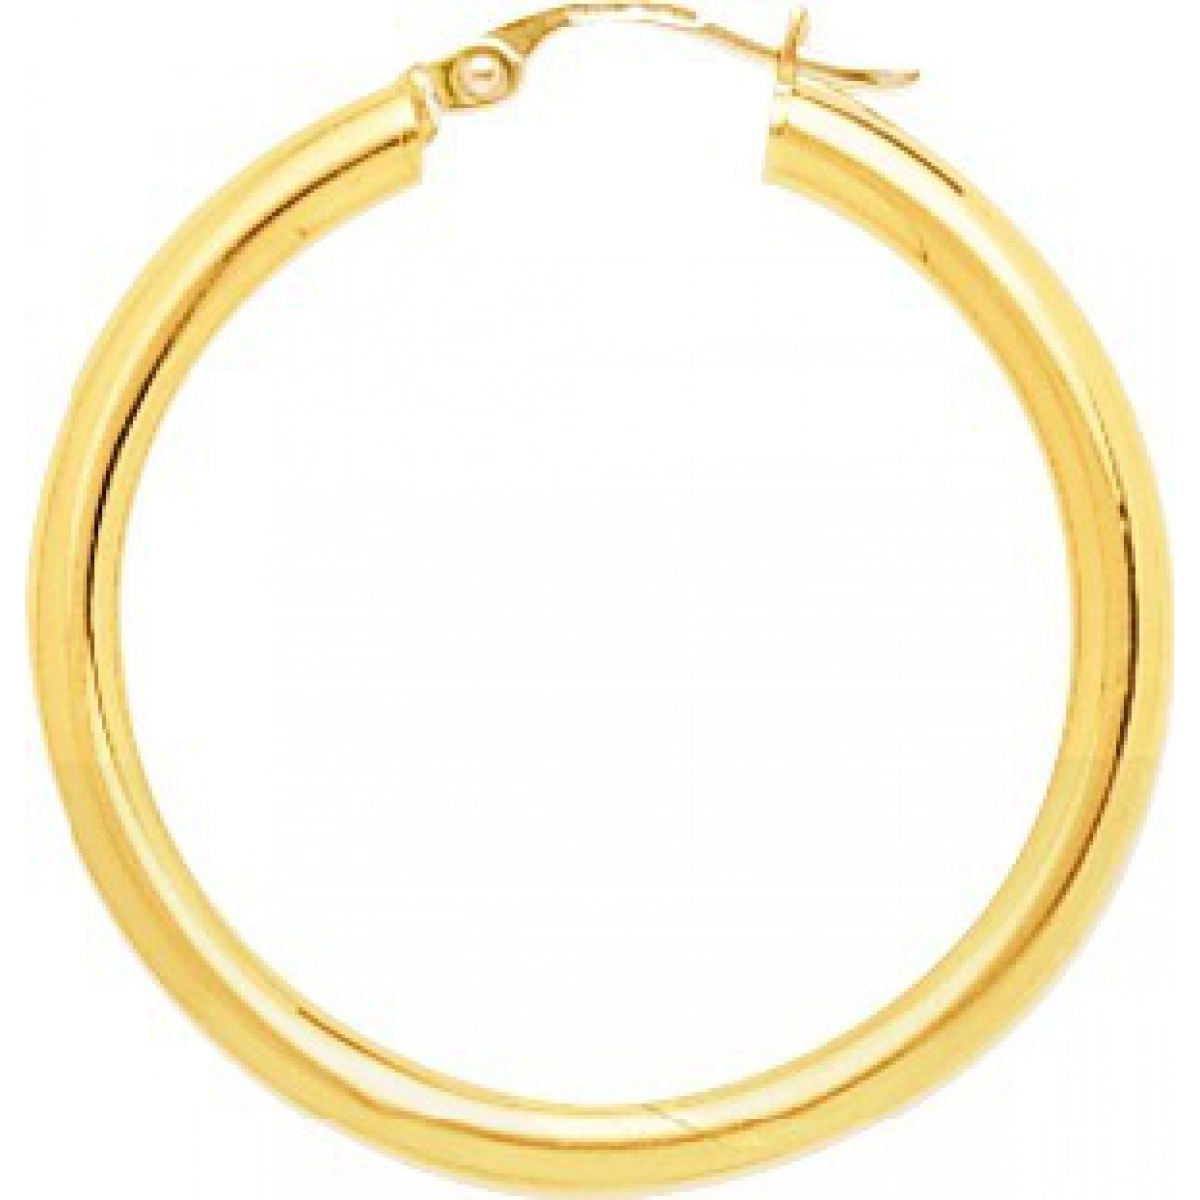 Hoops earrings pair plain 9K YG  Lua Blanca  650068.6.0